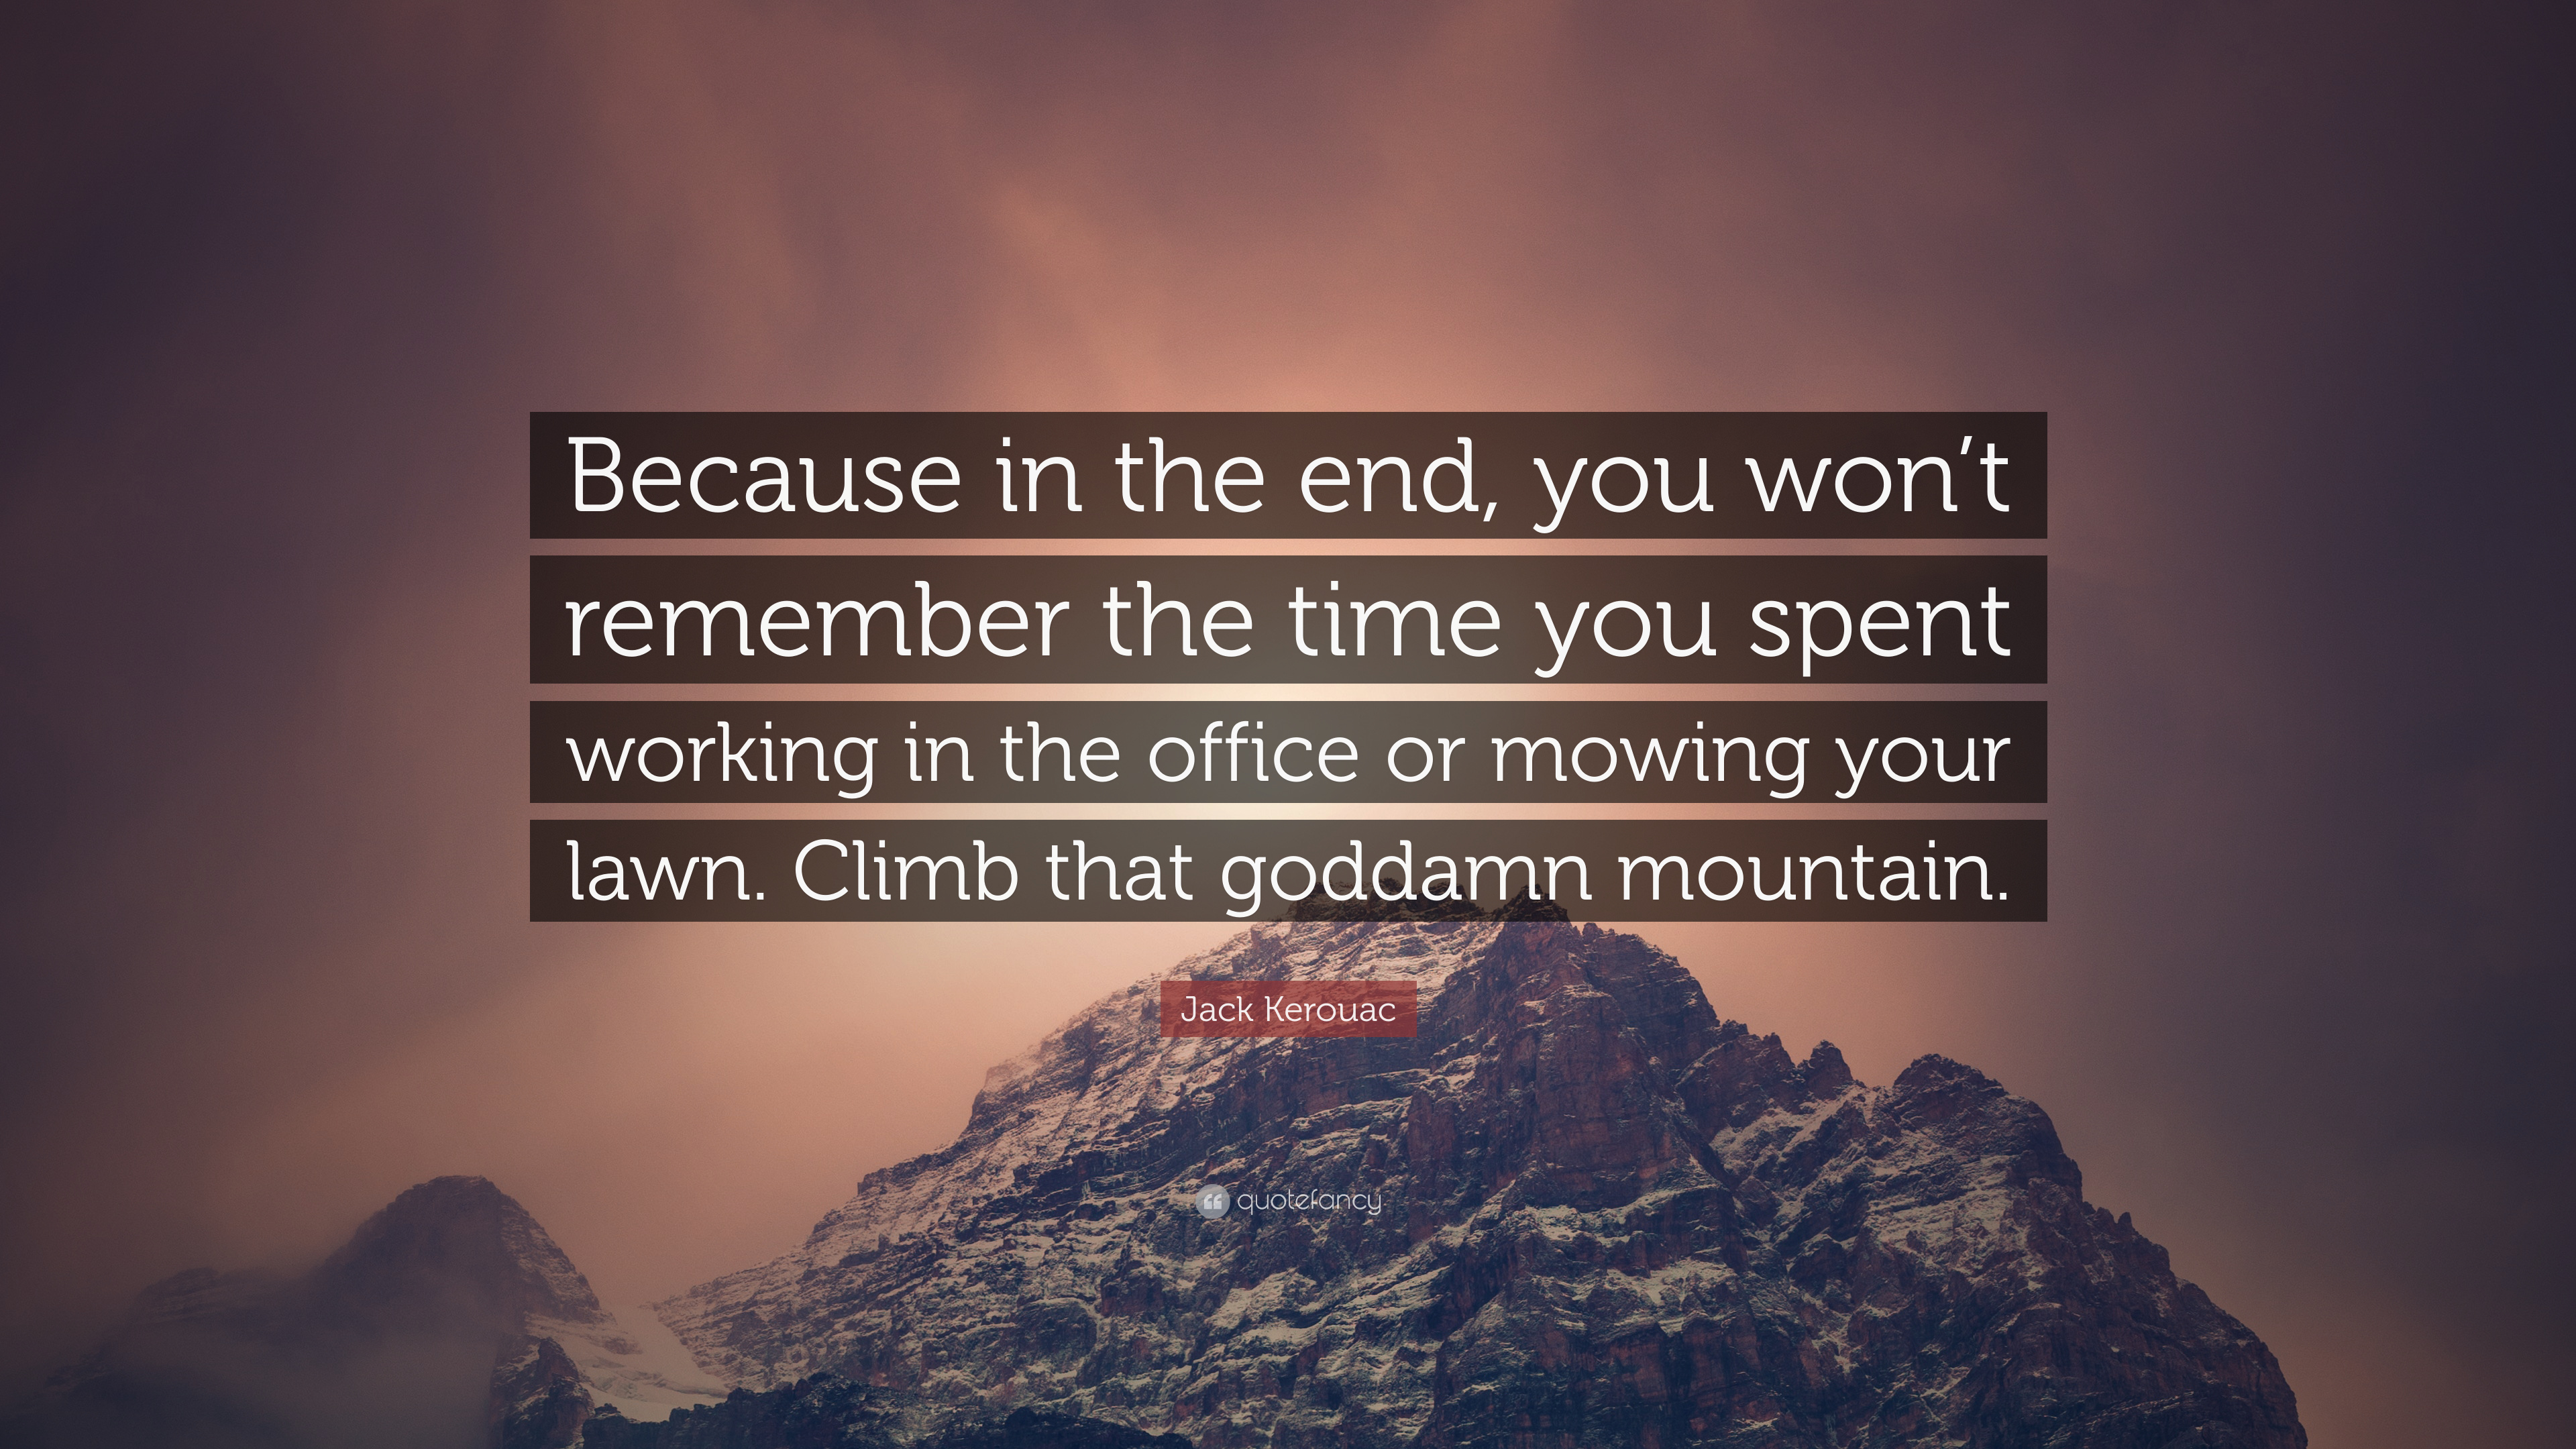 Quote Quotefancy Text Positive Nature Jack Kerouac Mountains Motivational Snow 3840x2160